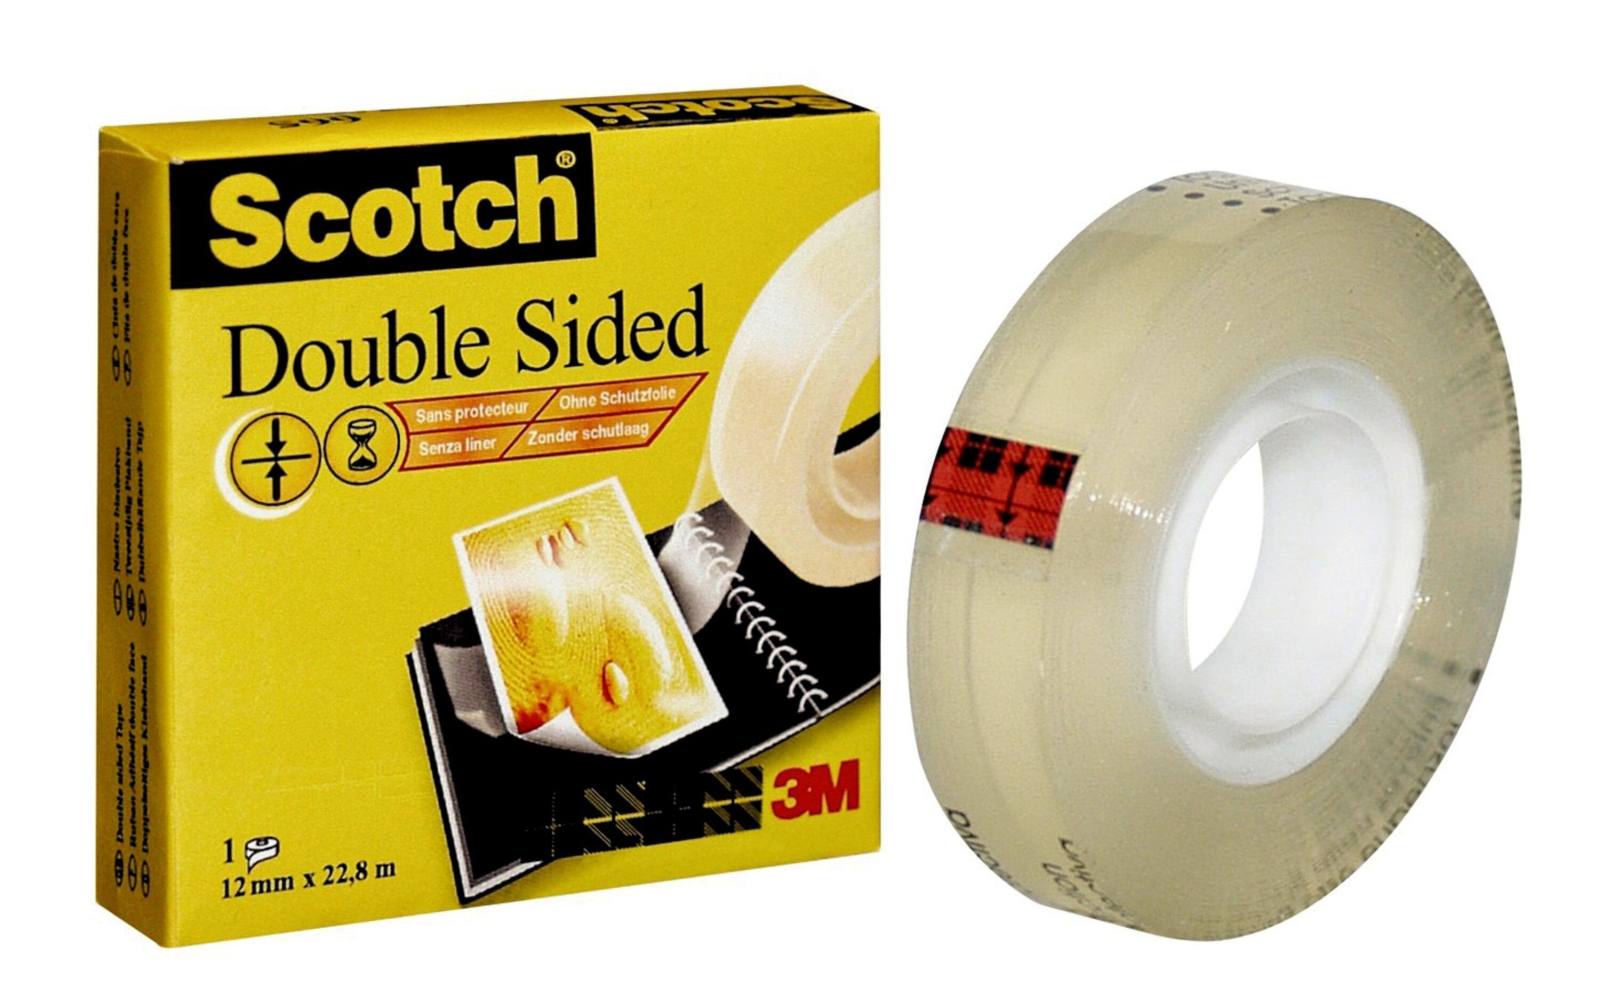 3M Scotch dubbelzijdig plakband met 1 rol 12 mm x 22,8 m